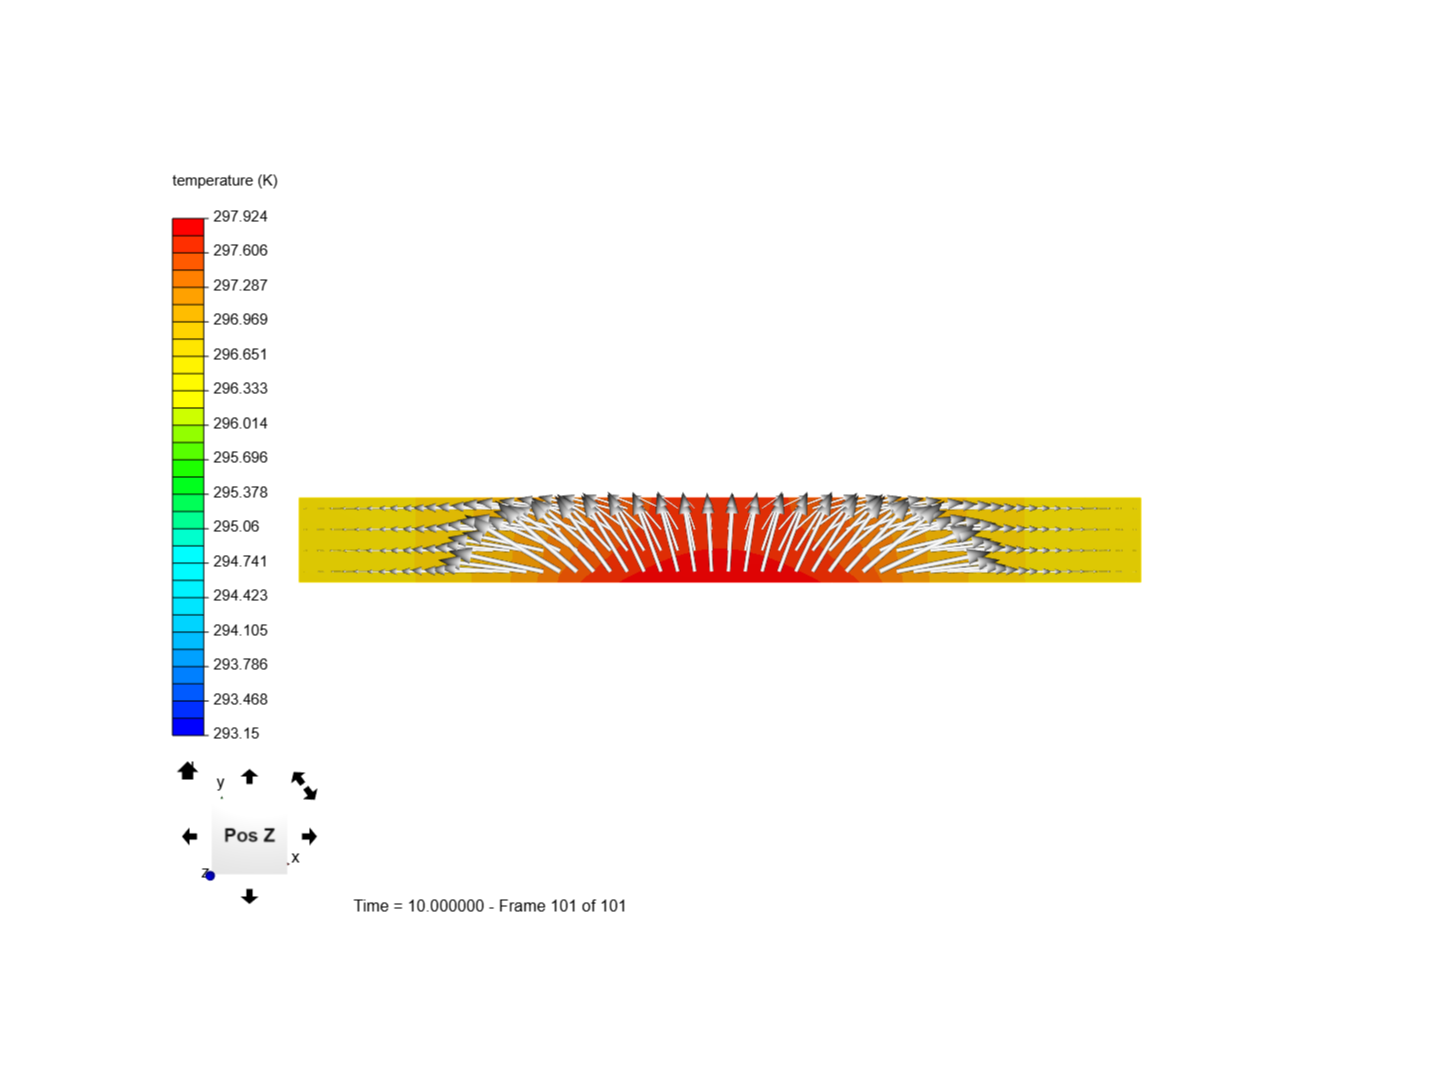 thermal diffusivity image